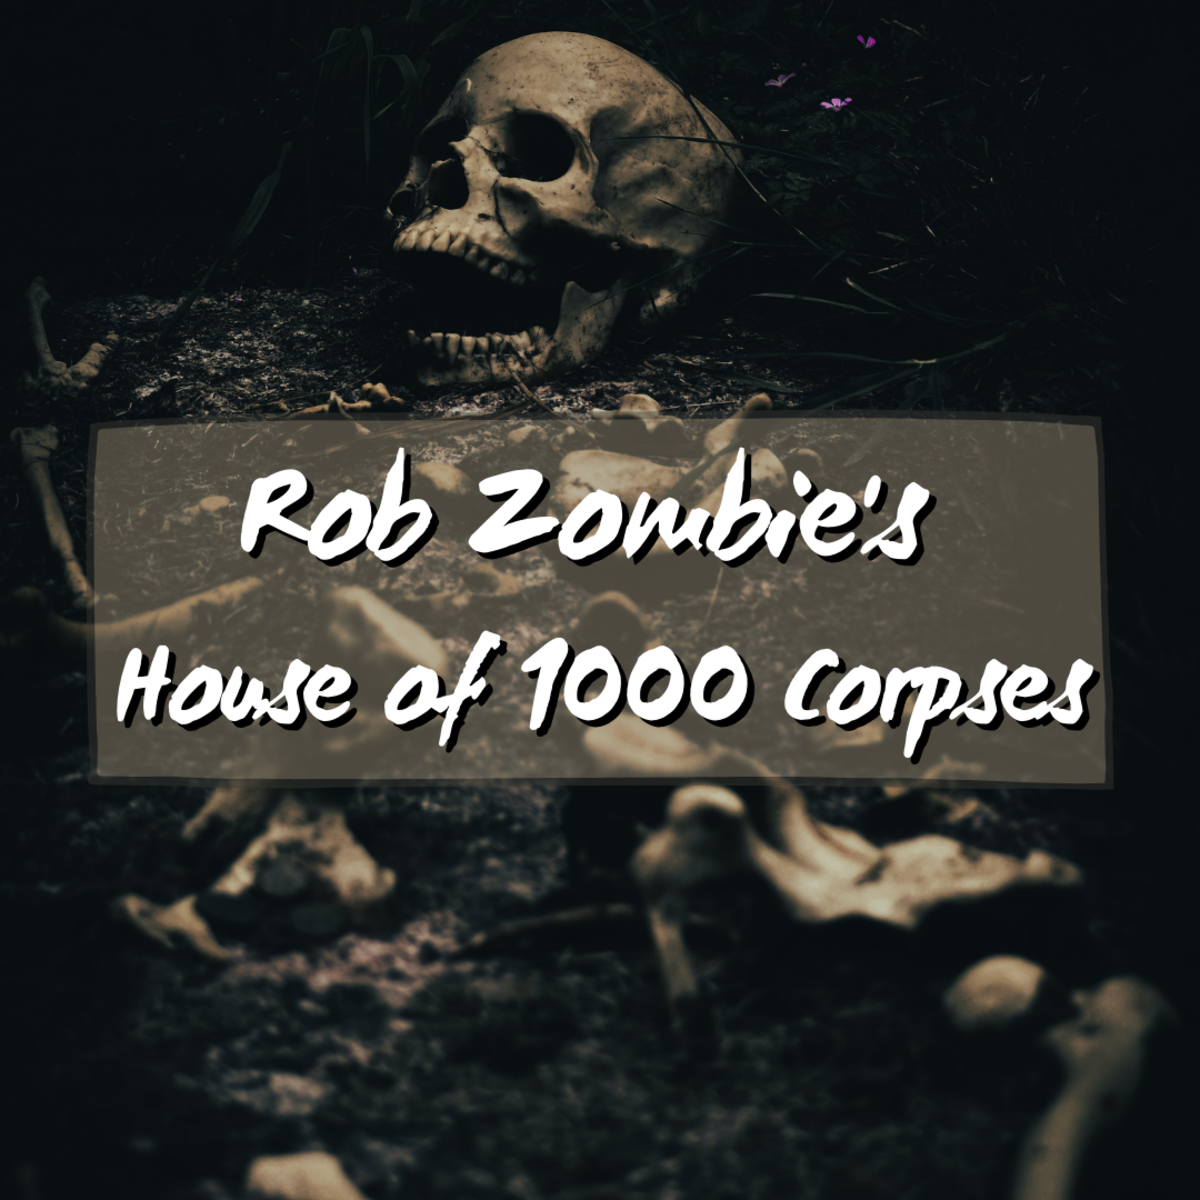 Rob Zombie's 